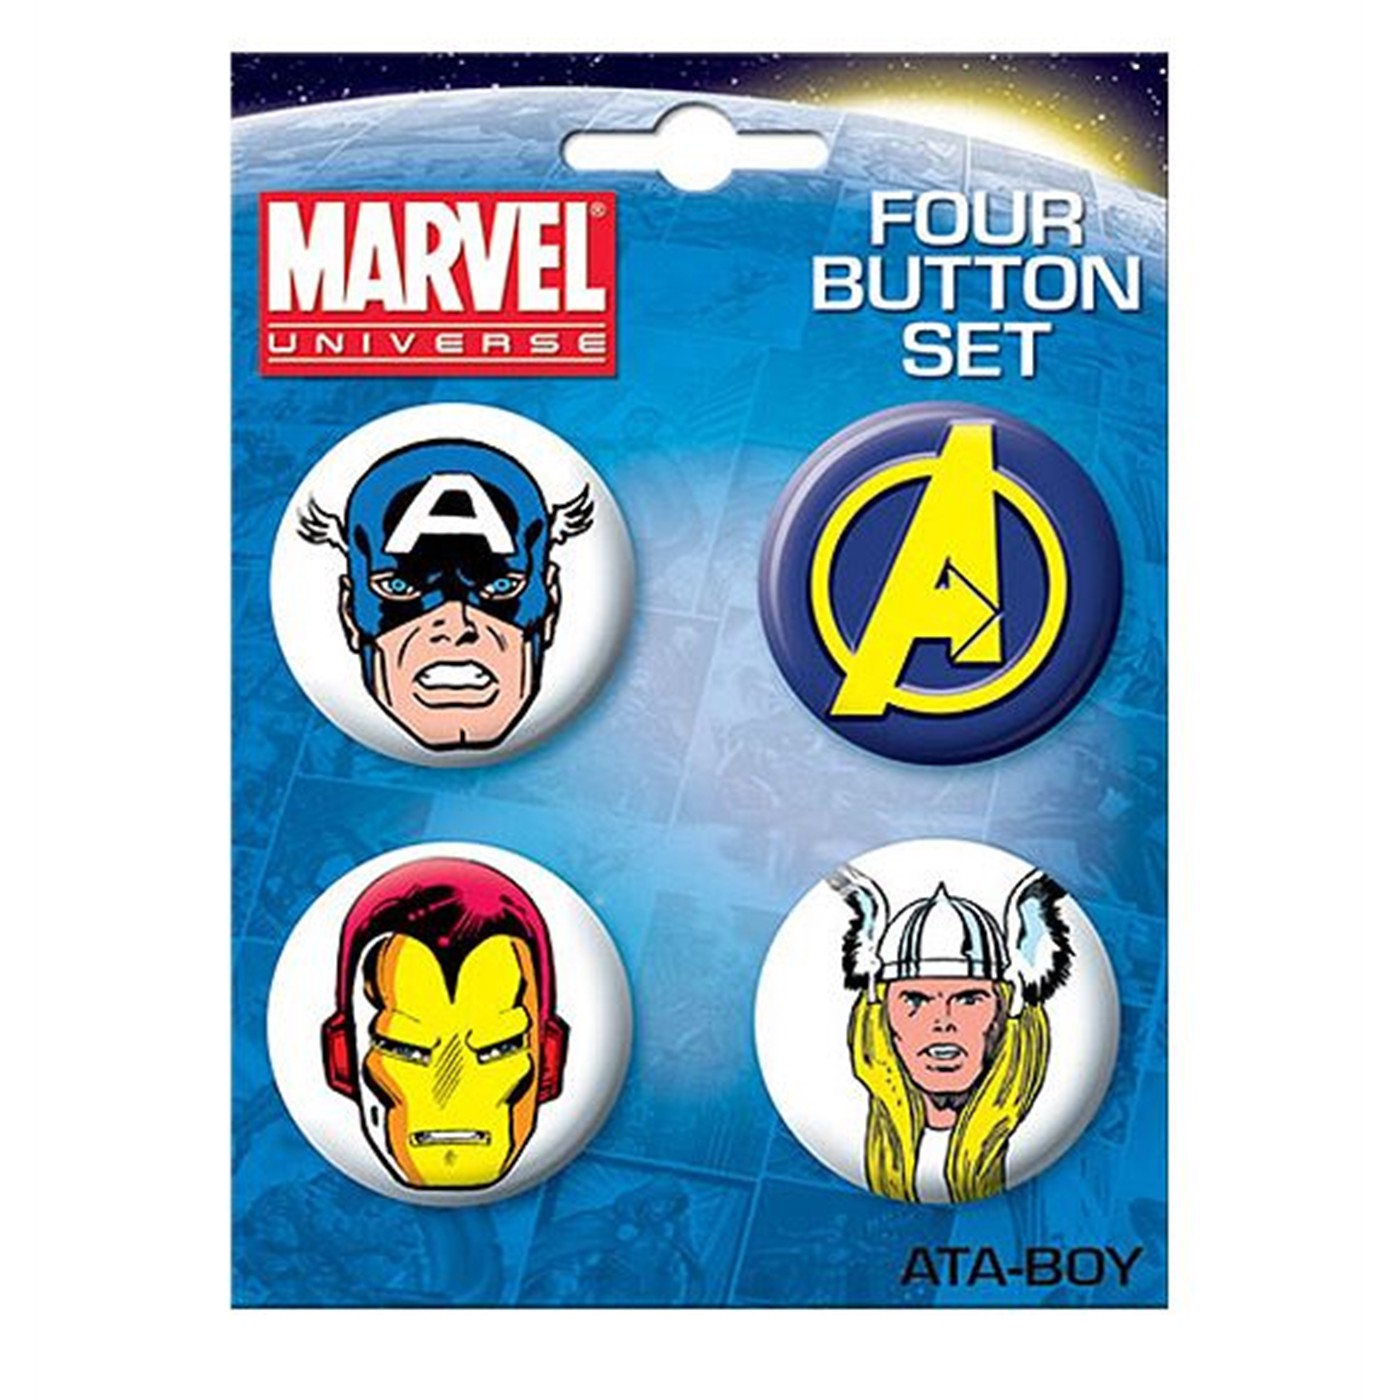 Avengers Four Button Set 1